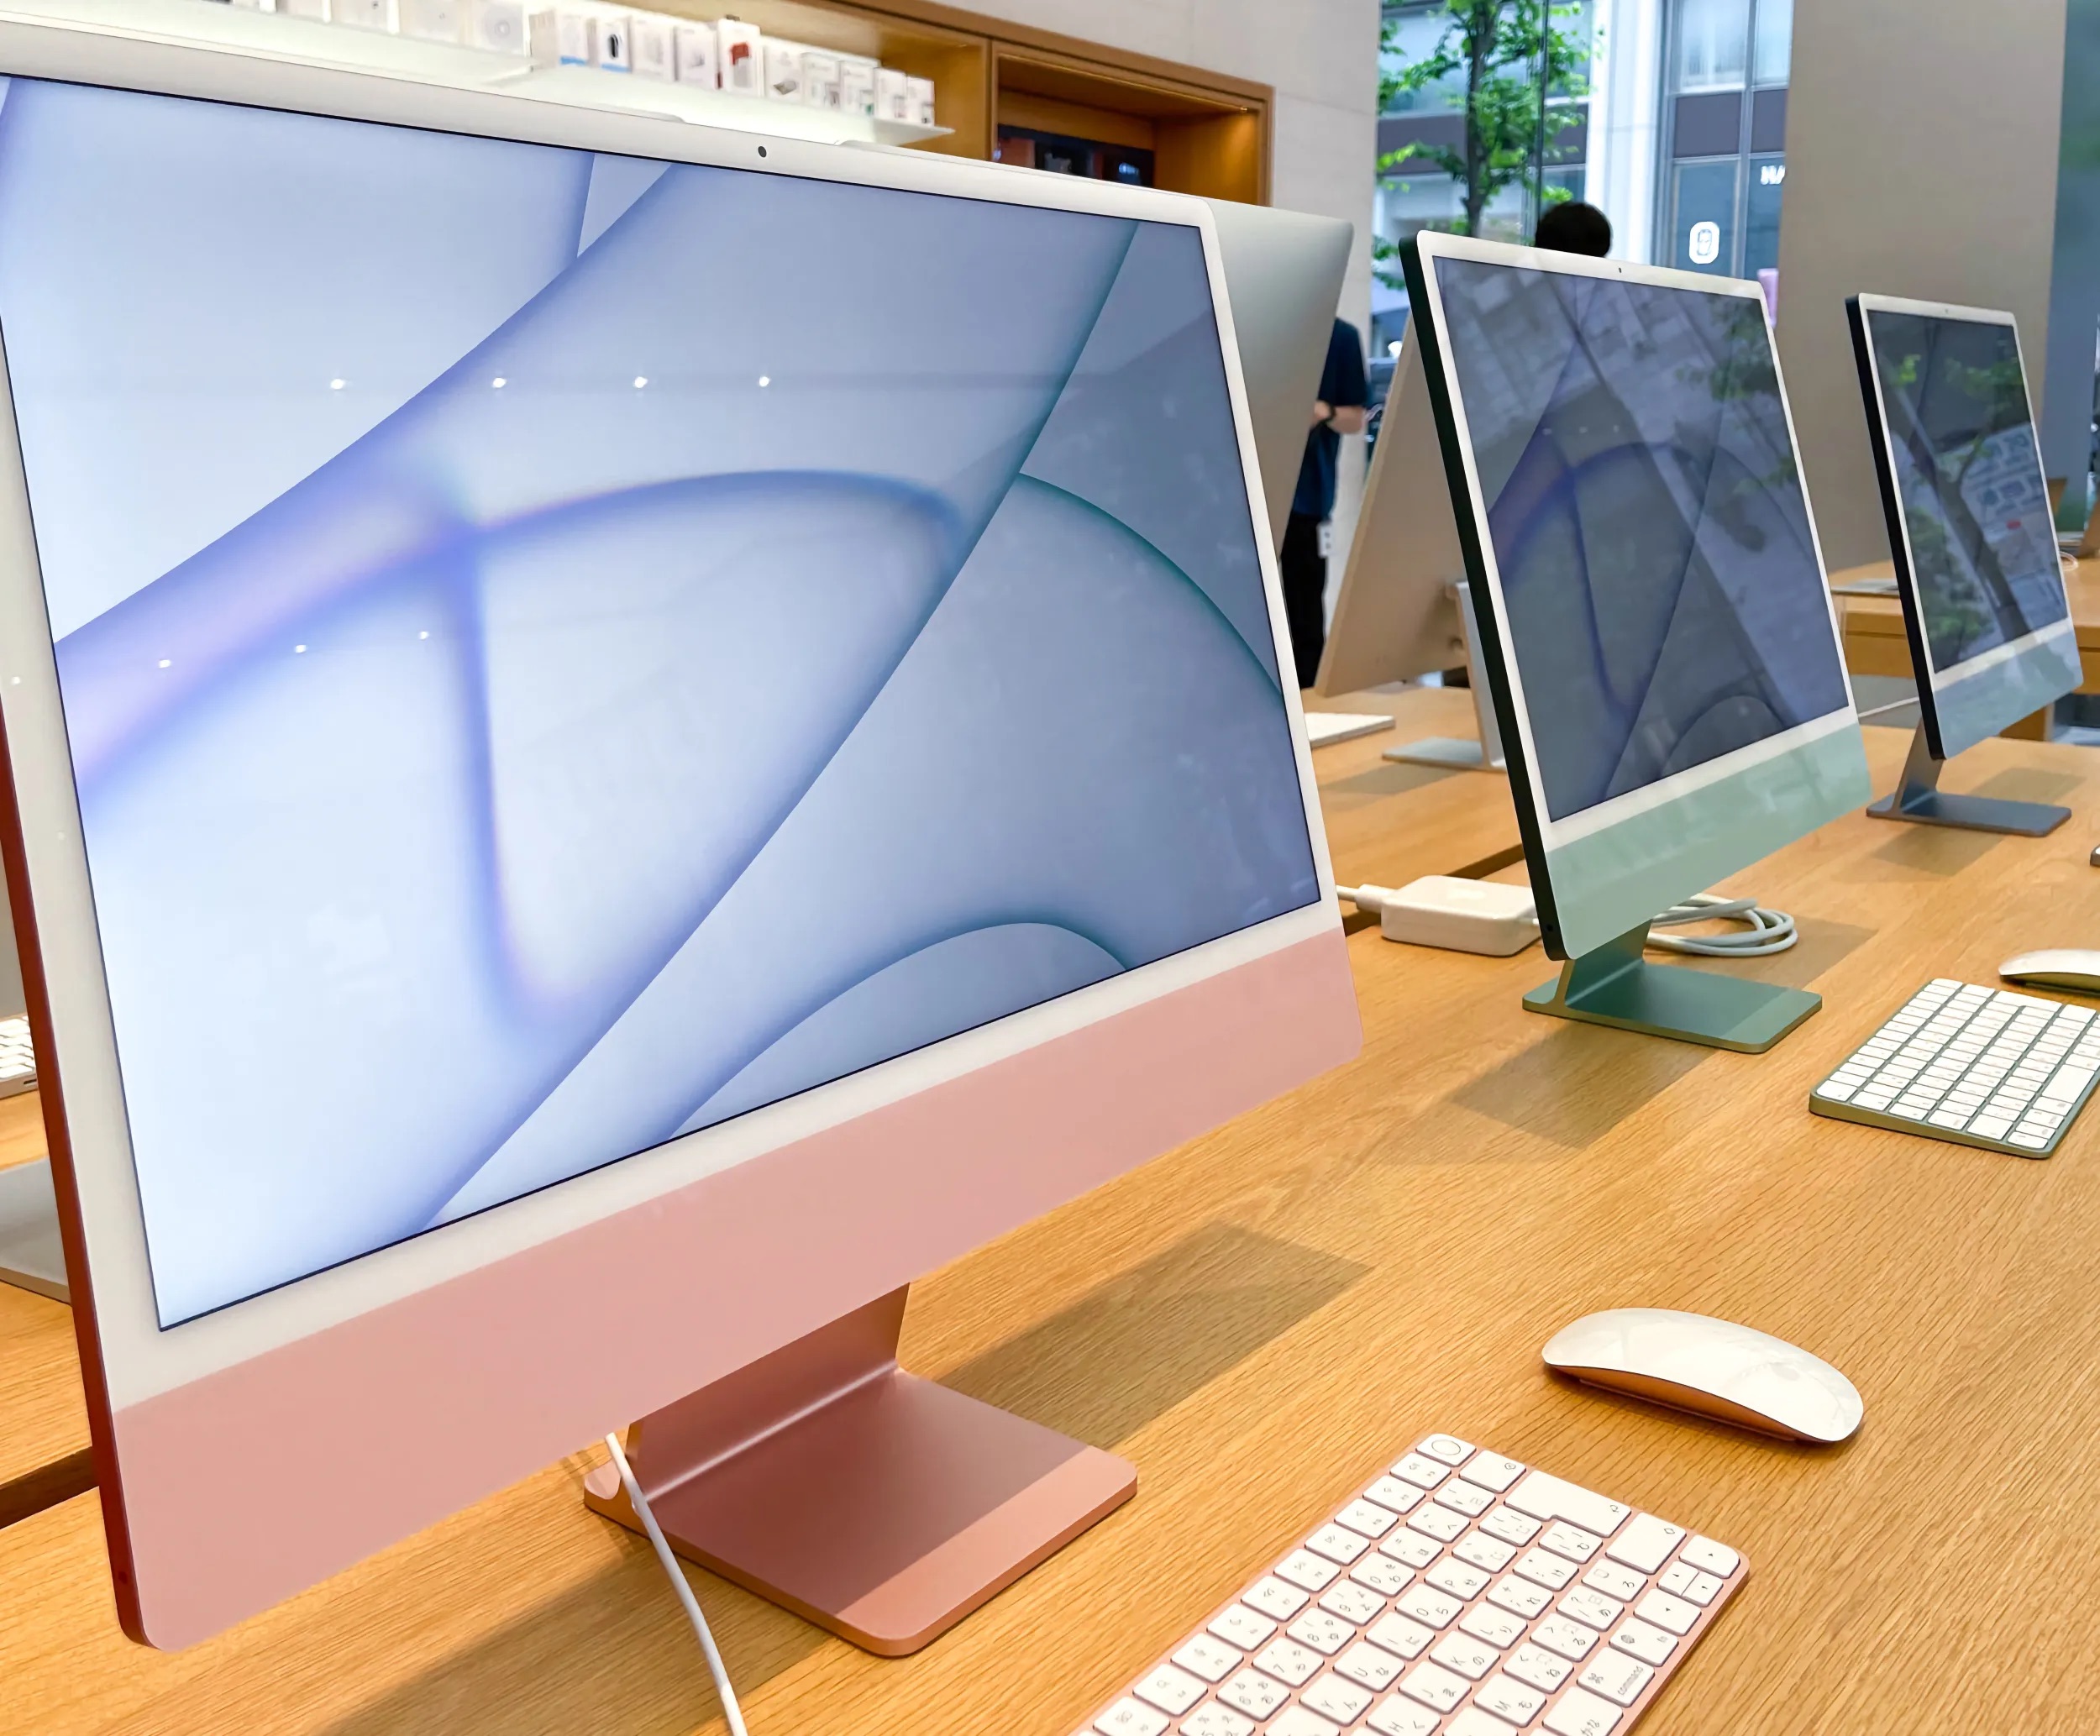 苹果曾考虑为M1 iMac增加面容 ID 功能